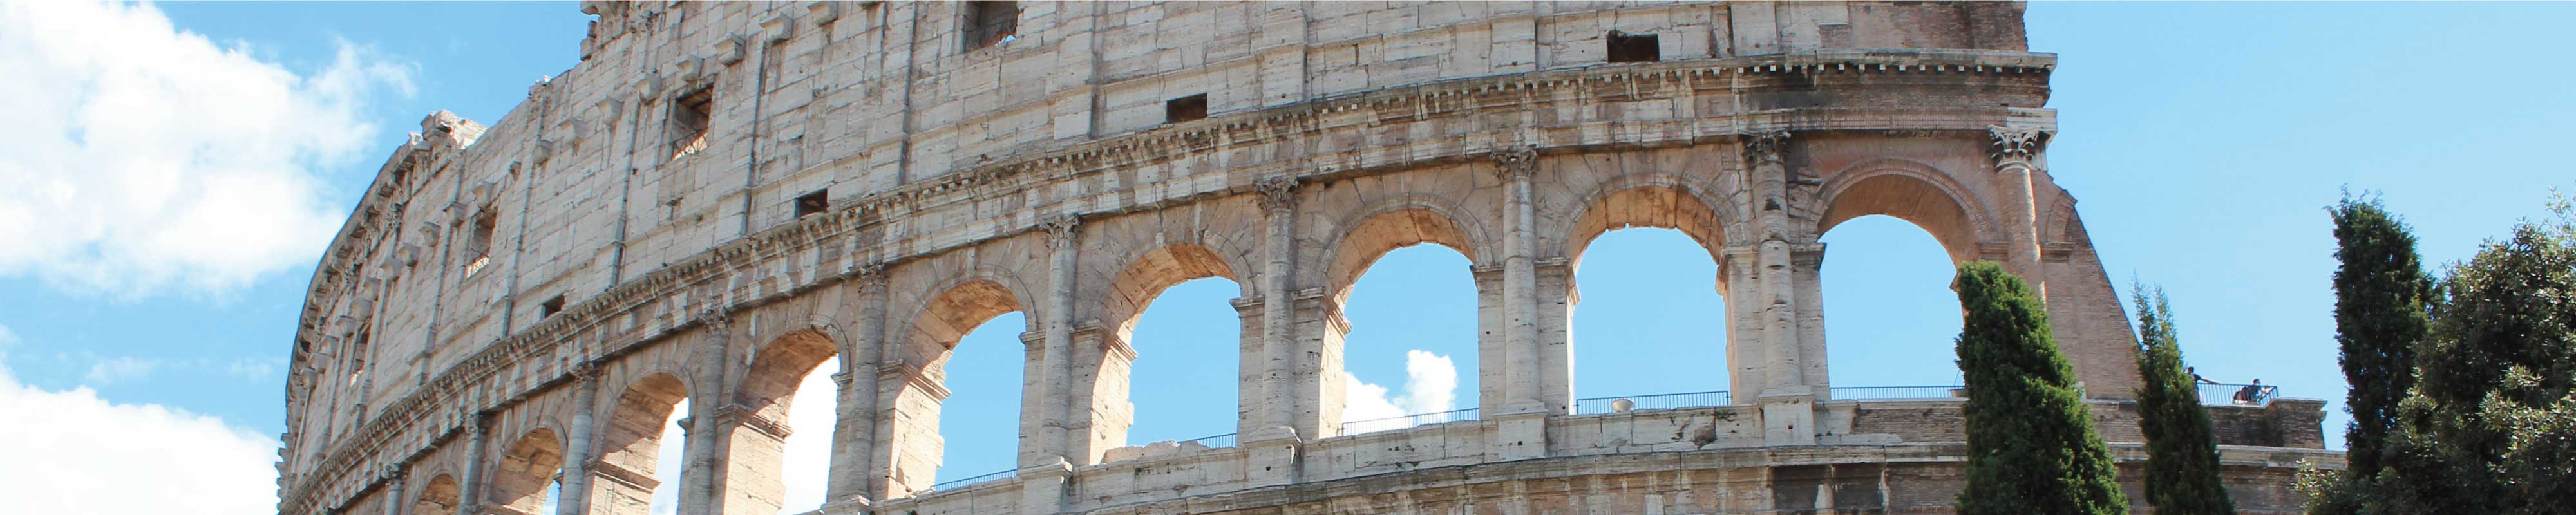 Luggage Storage | Colosseum in Rome - Nannybag